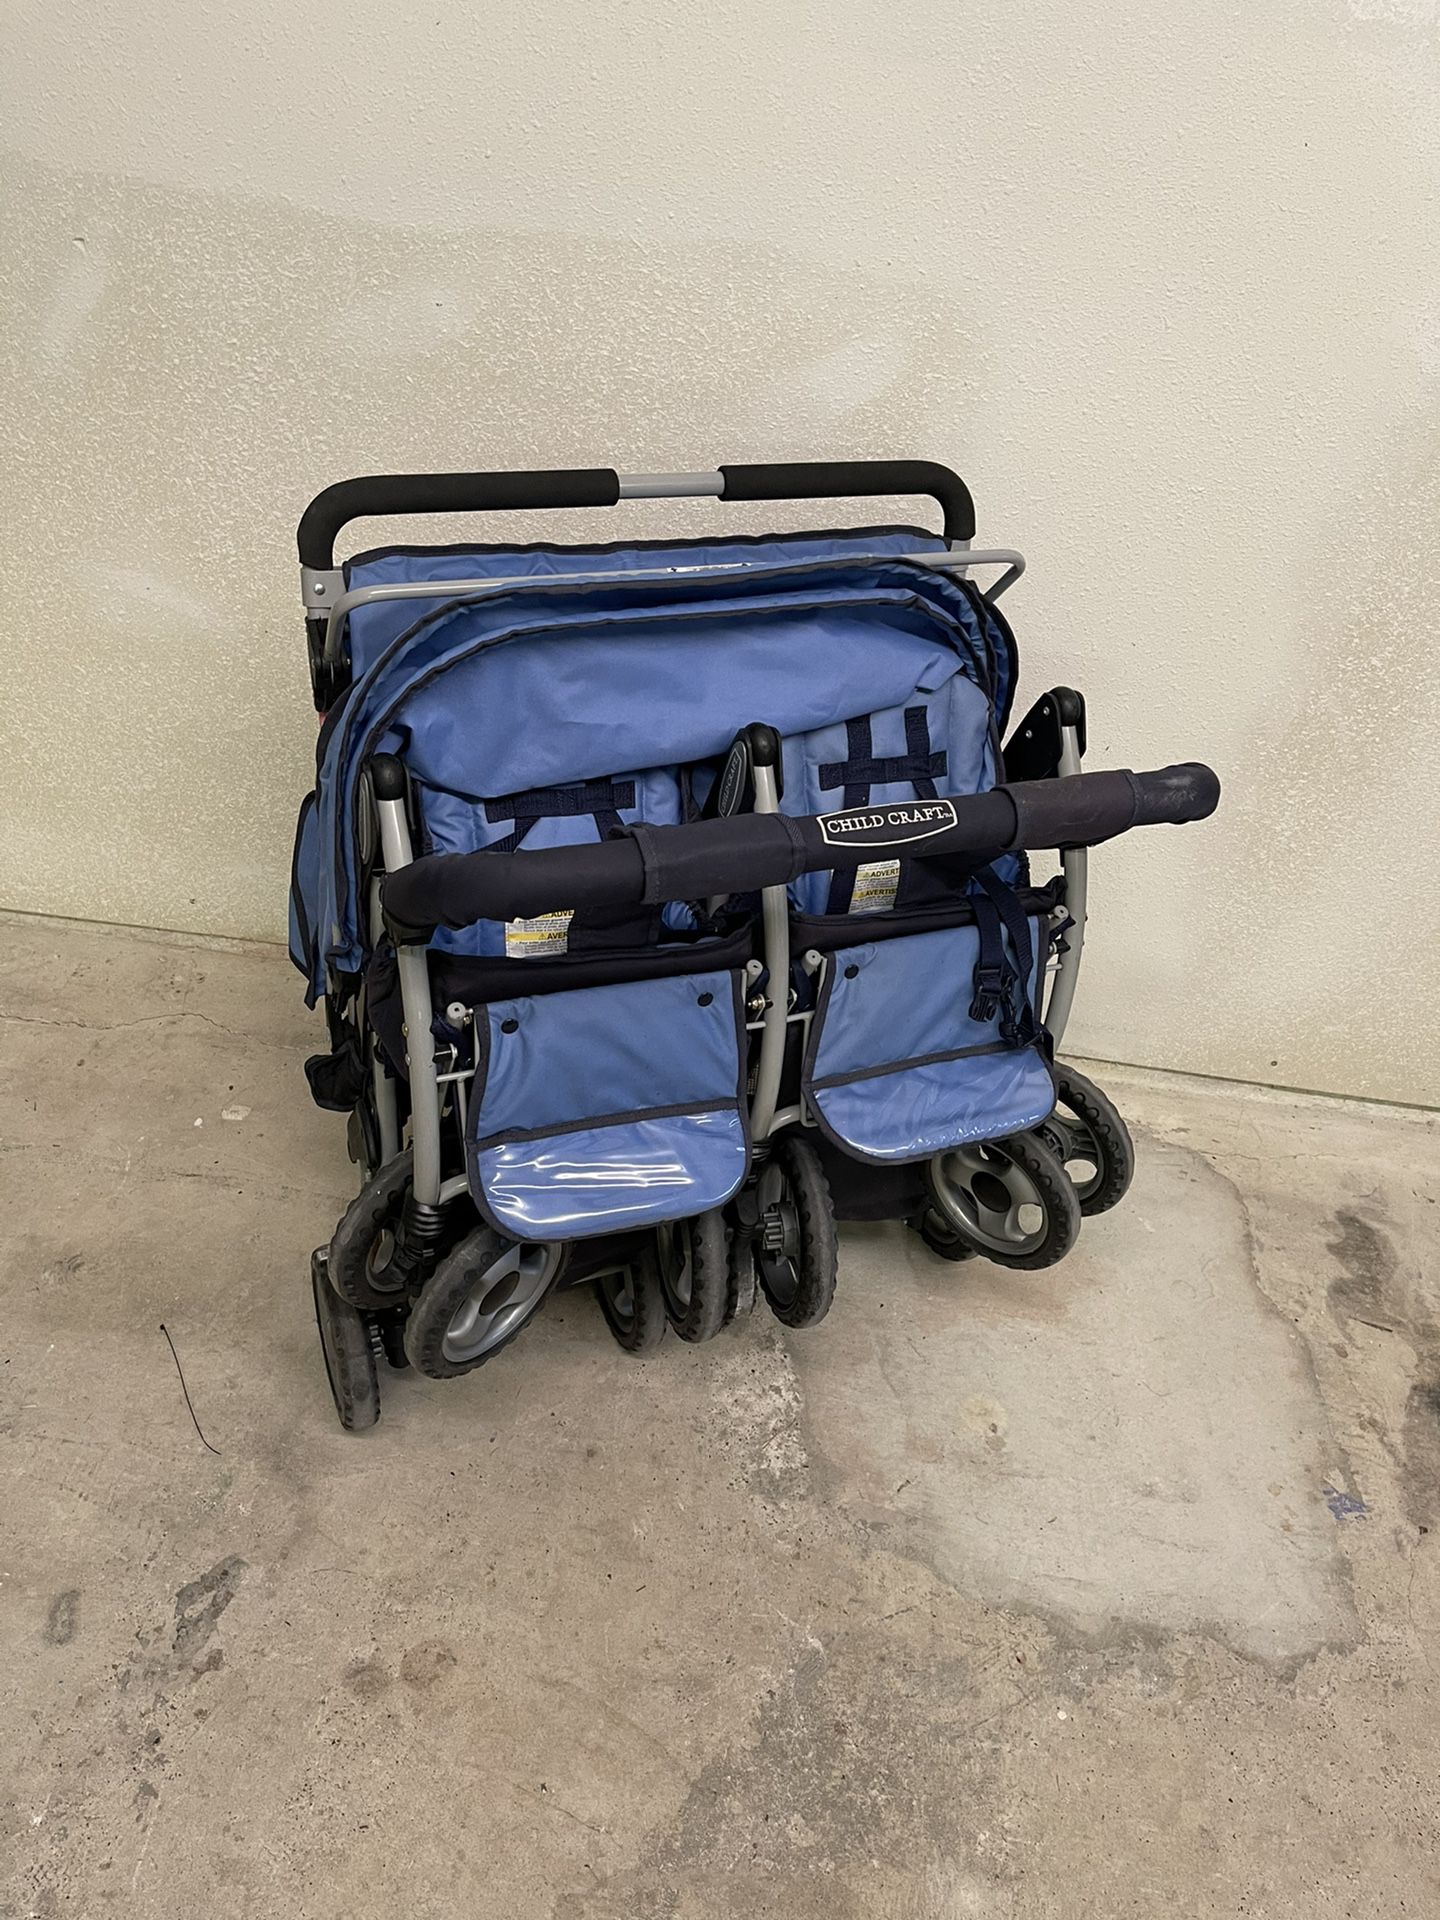 Child Craft 4 Seater Stroller